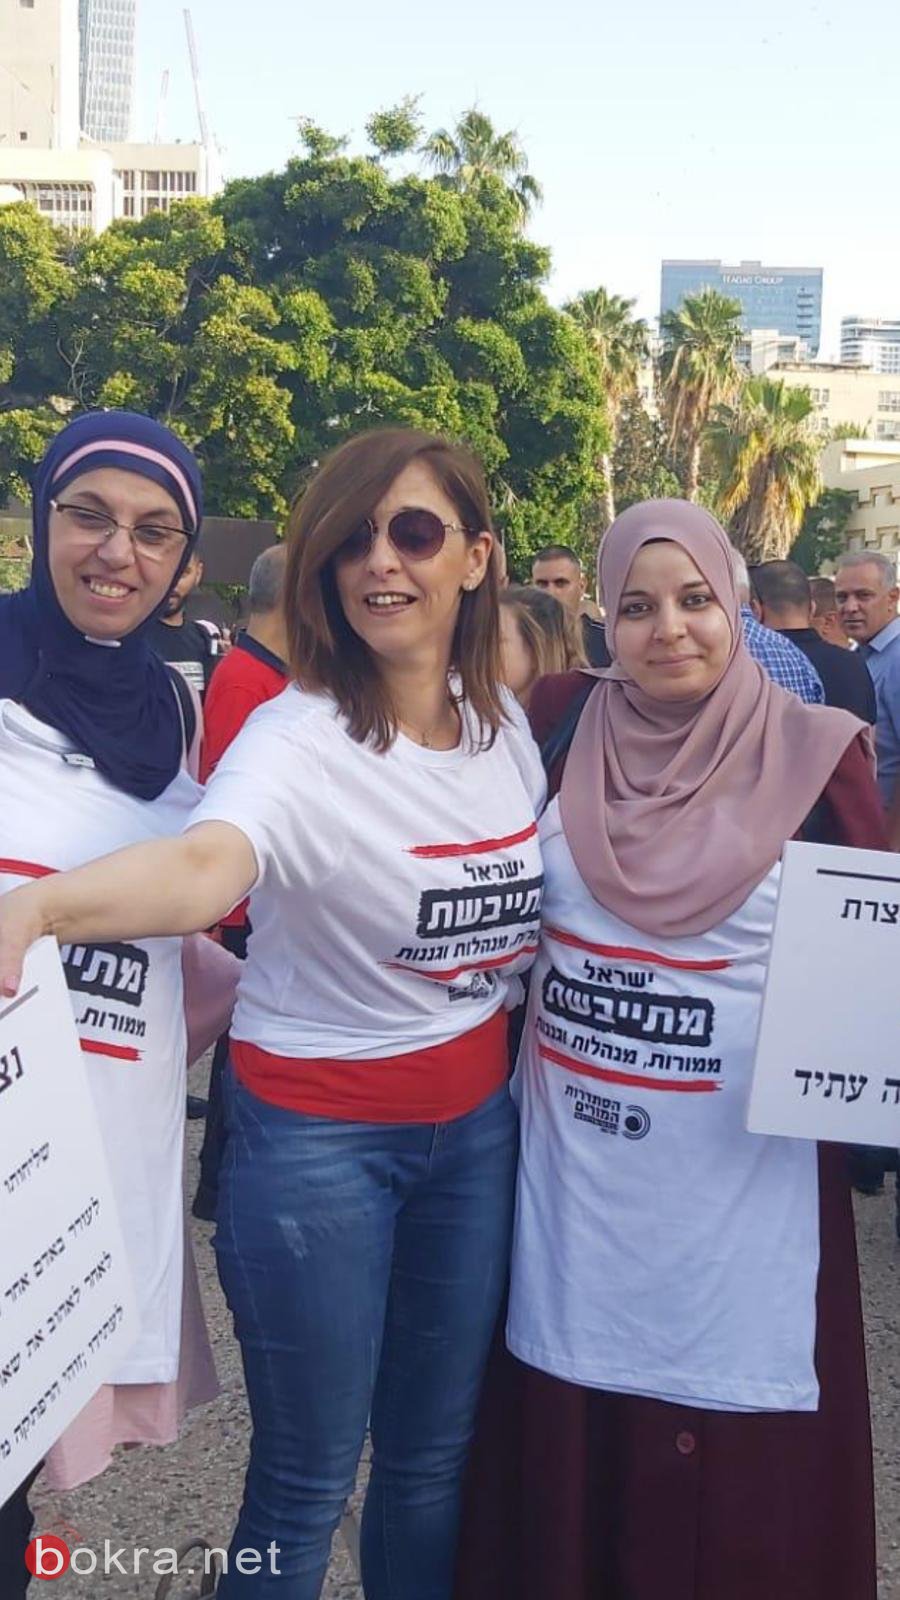 طاقم المدرسة الجماهيريّة بئر الأمير الناصرة وطاقم اكاديميّة الأمهات، يشاركون في المظاهرة في تل أبيب-0